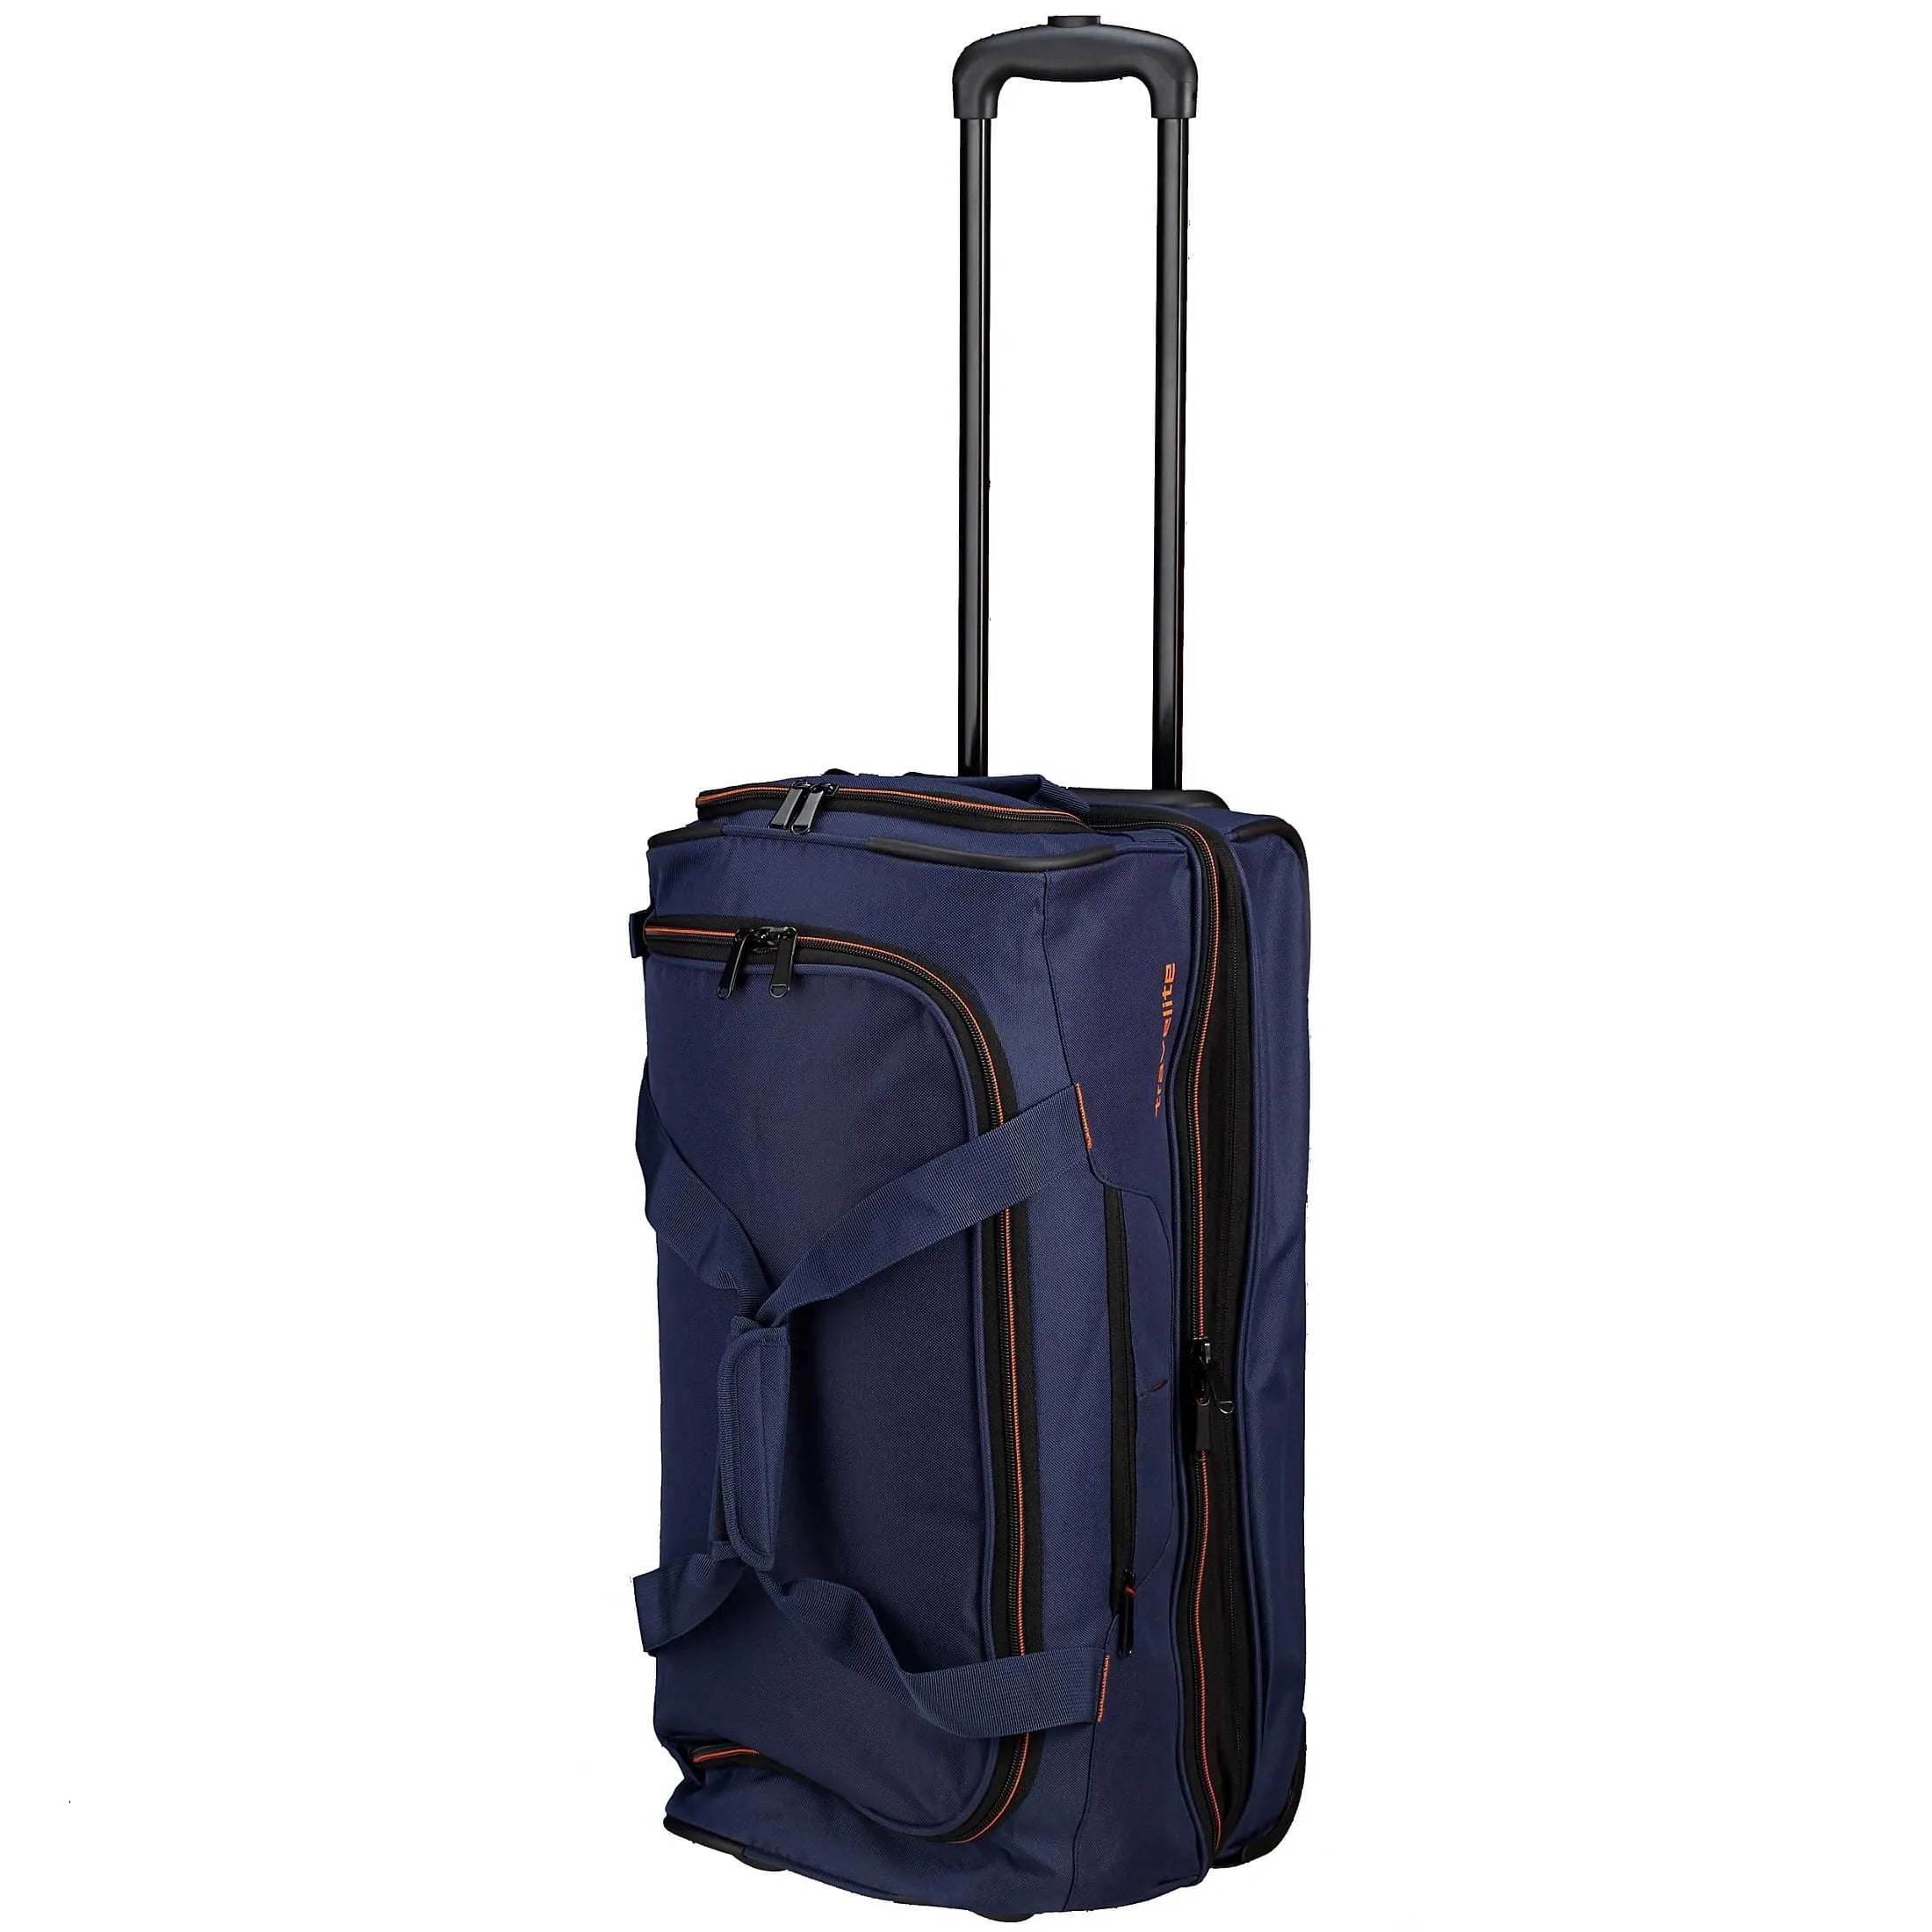 Travelite Basics trolley travel bag 55 cm - navy-orange